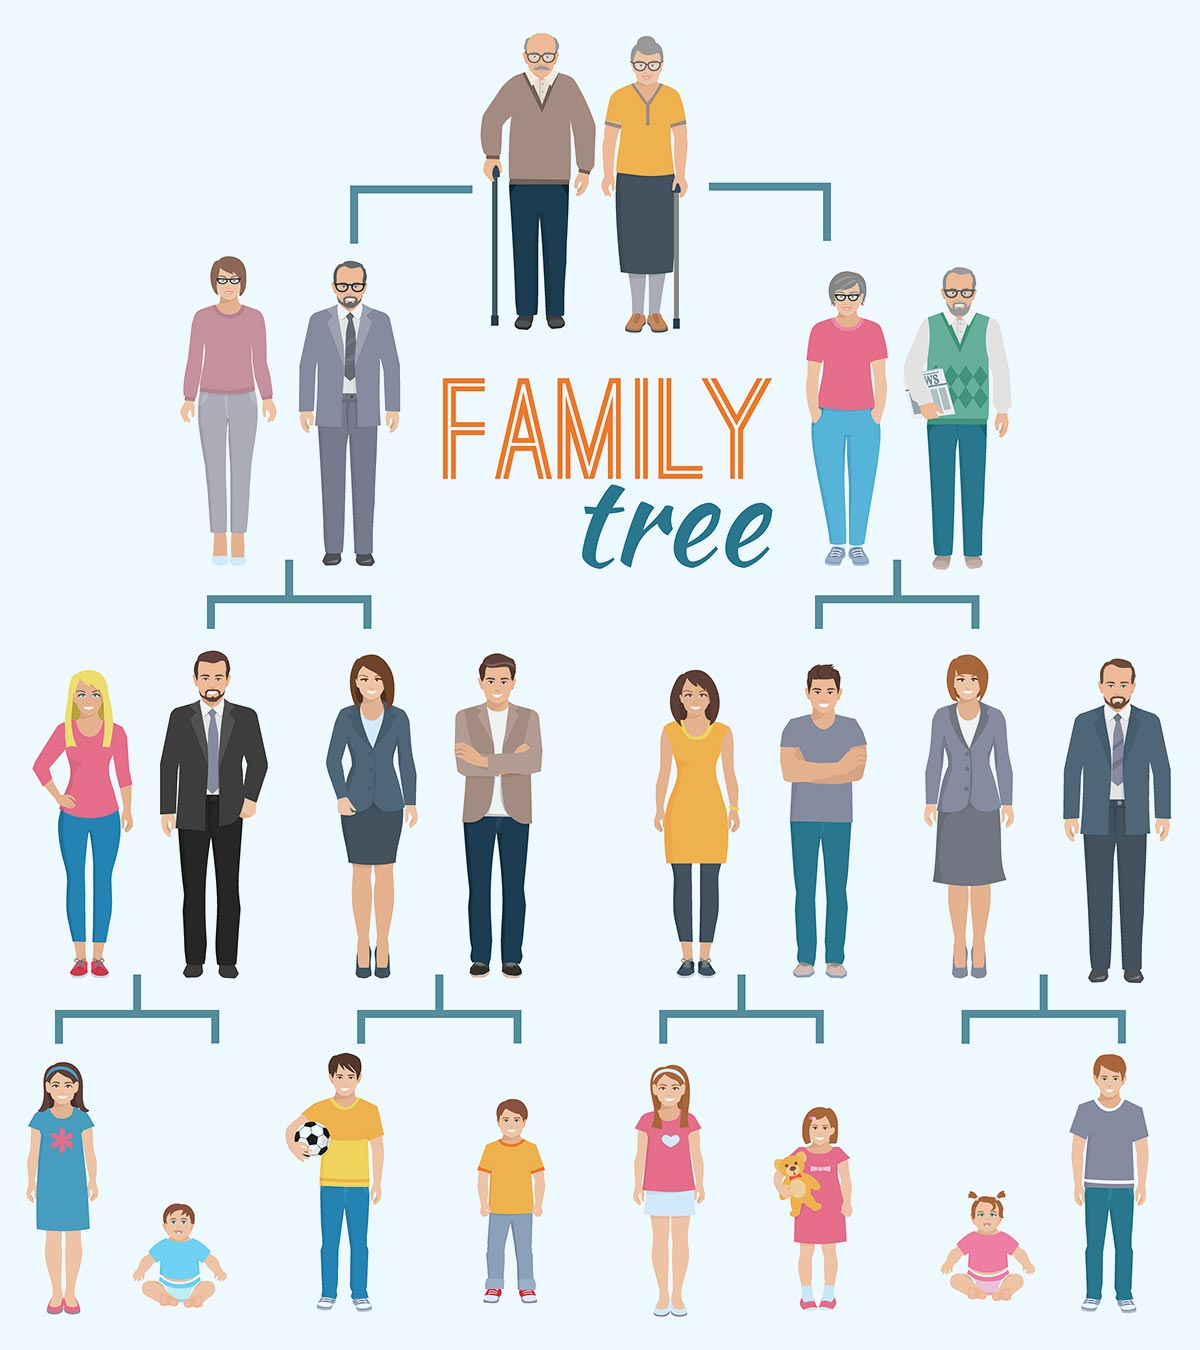 21 Unique And Creative Family Tree Design Ideas